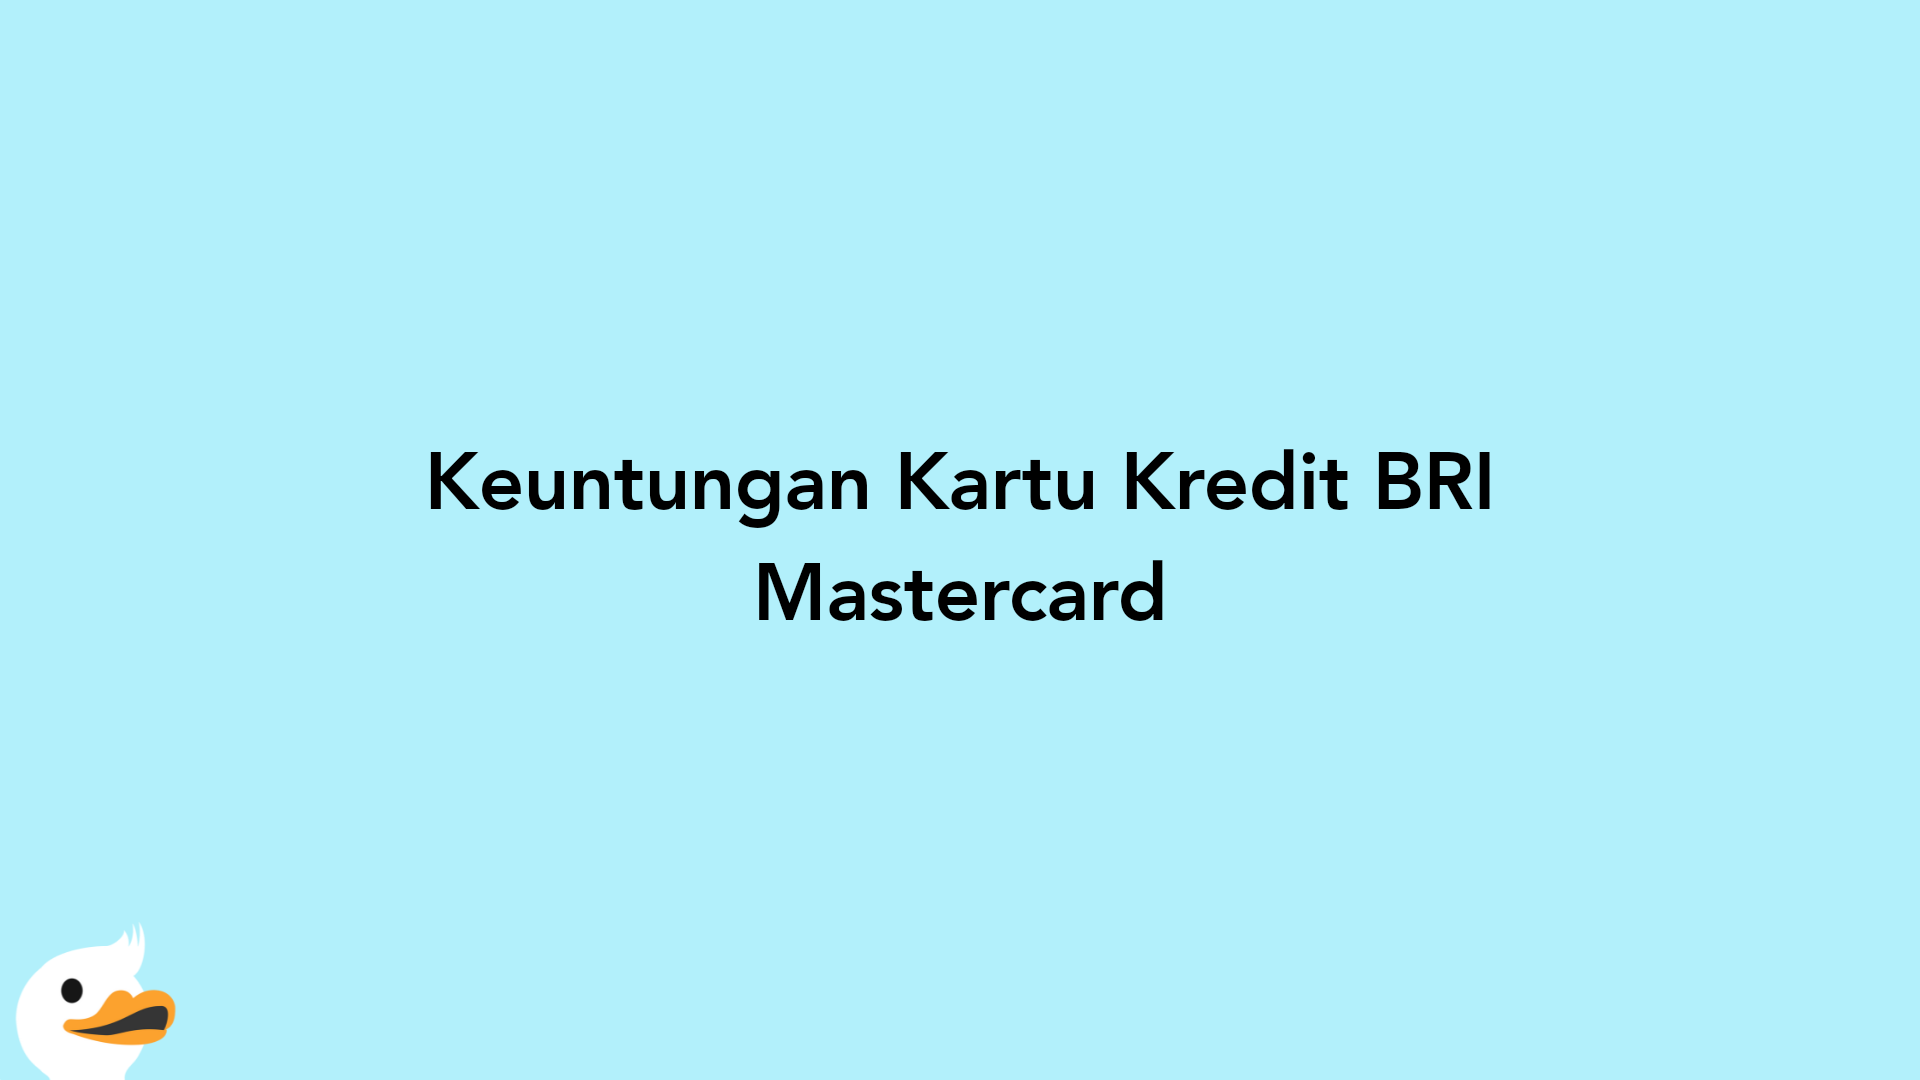 Keuntungan Kartu Kredit BRI Mastercard